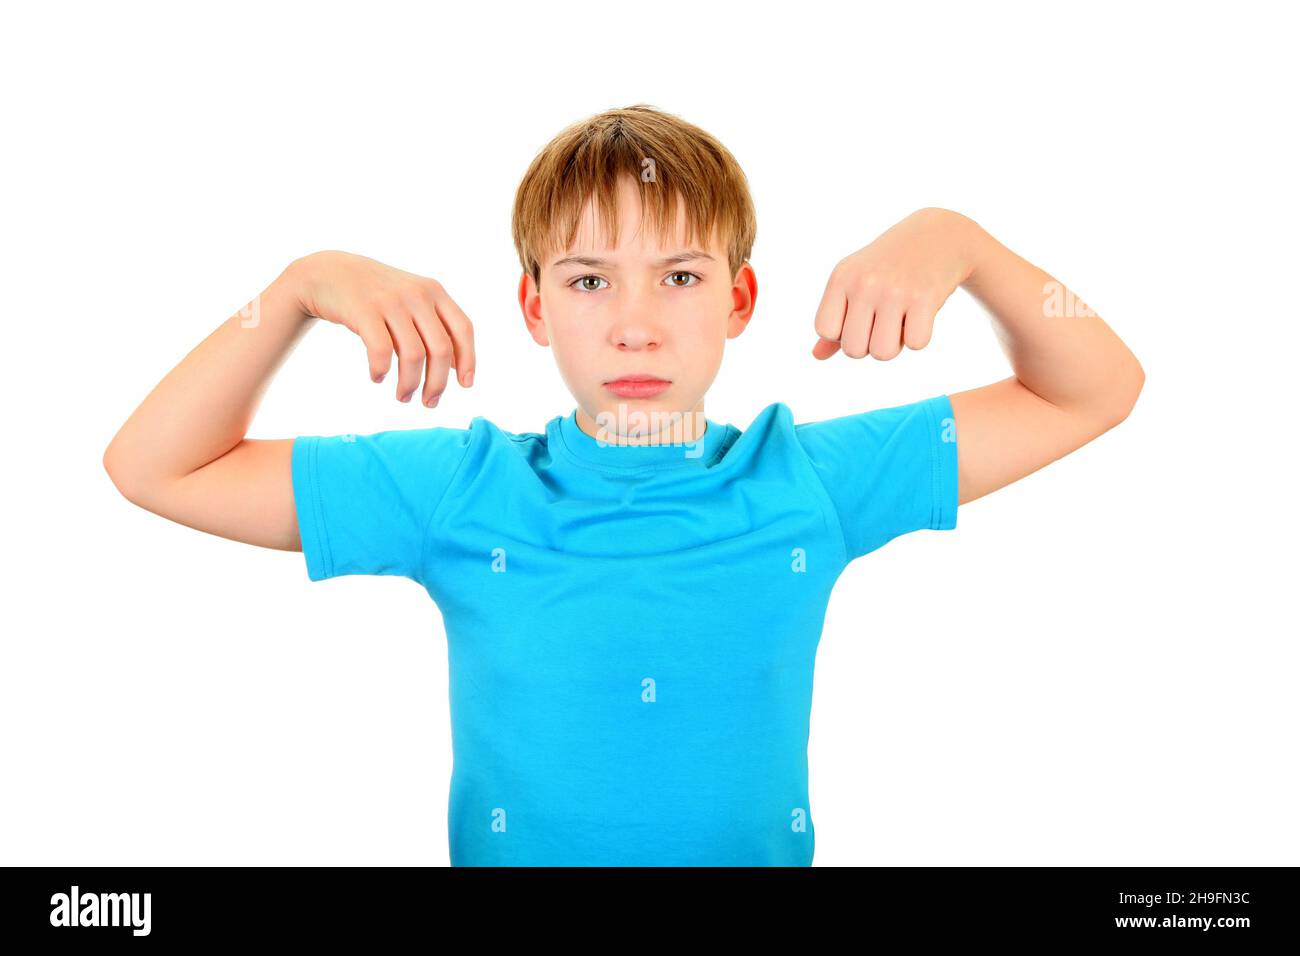 Erschöpft Kind Muskel Flexing isoliert auf dem weißen Hintergrund Stockfoto